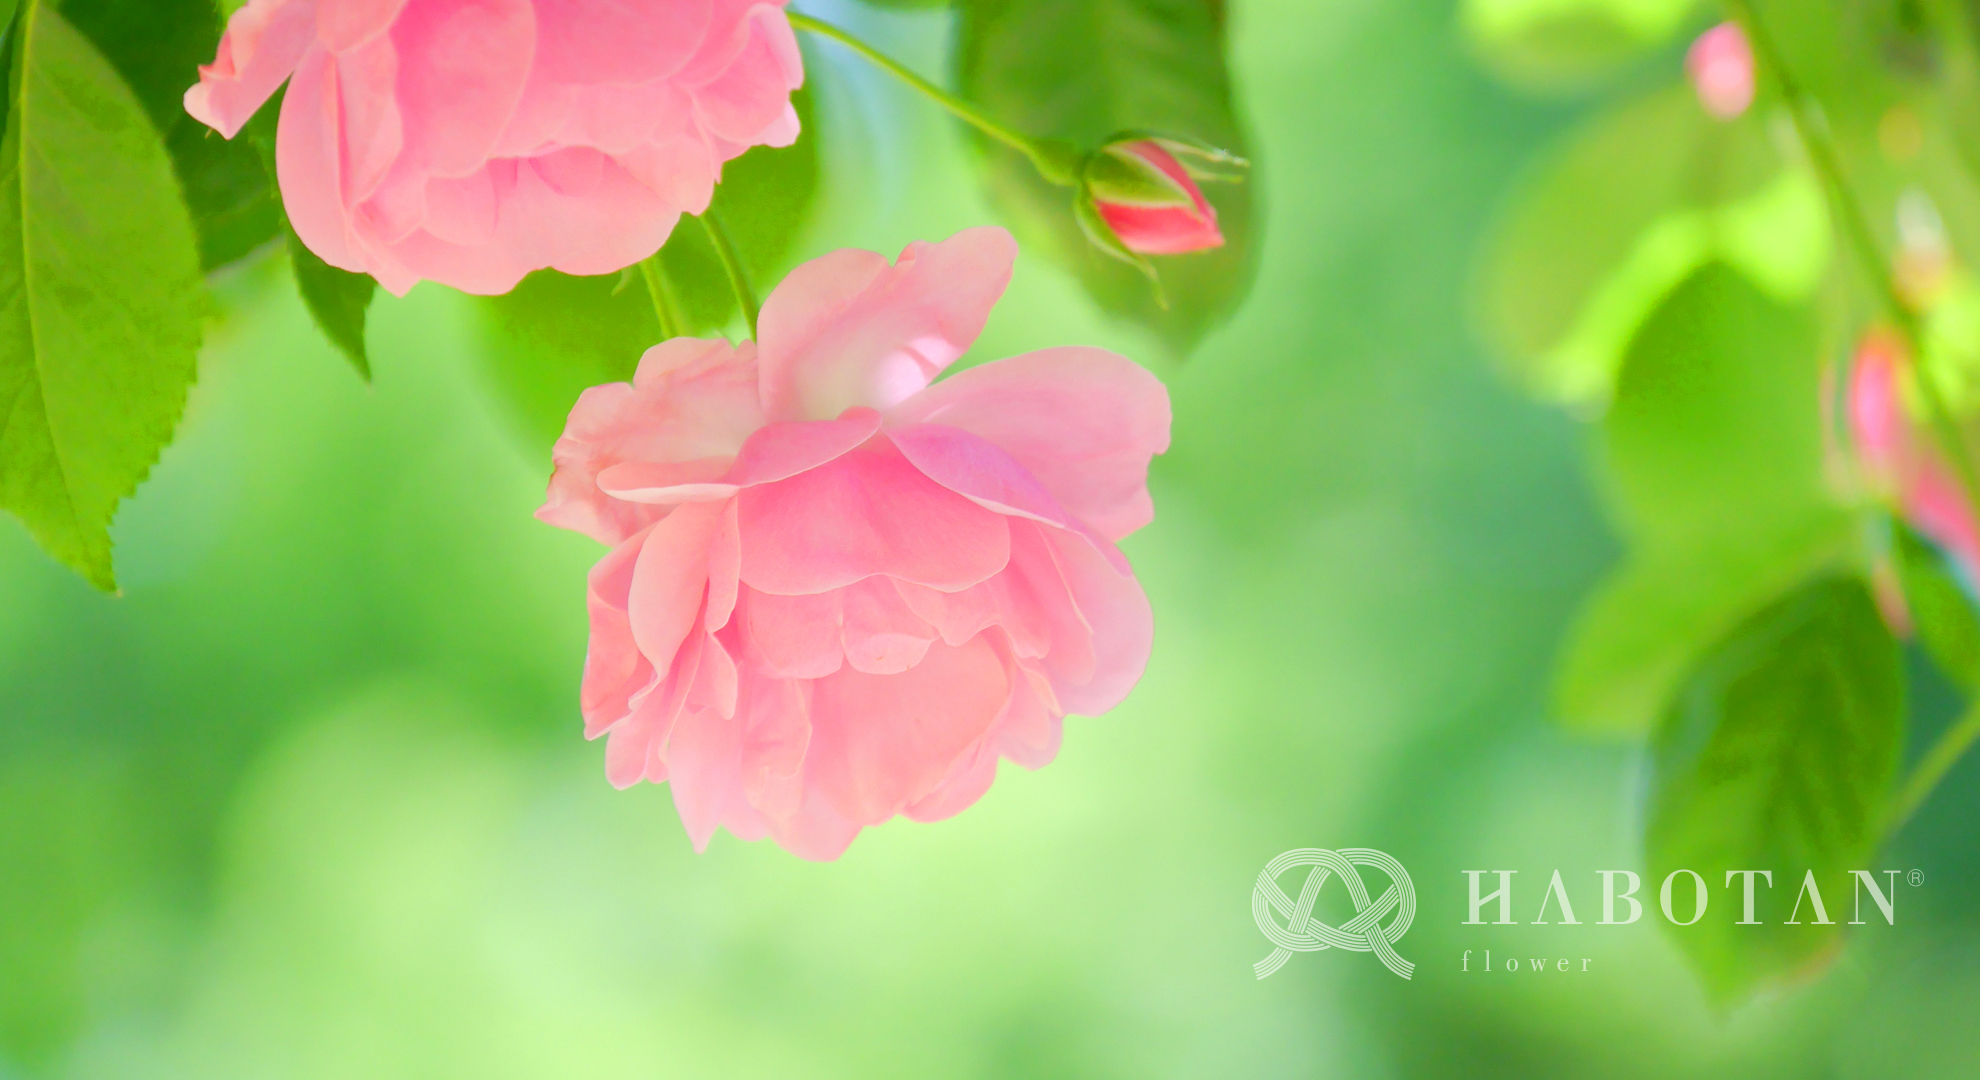 お花の壁紙プレゼント 法人向け花の配達 ギフト Habotan Flower ハボタンフラワー